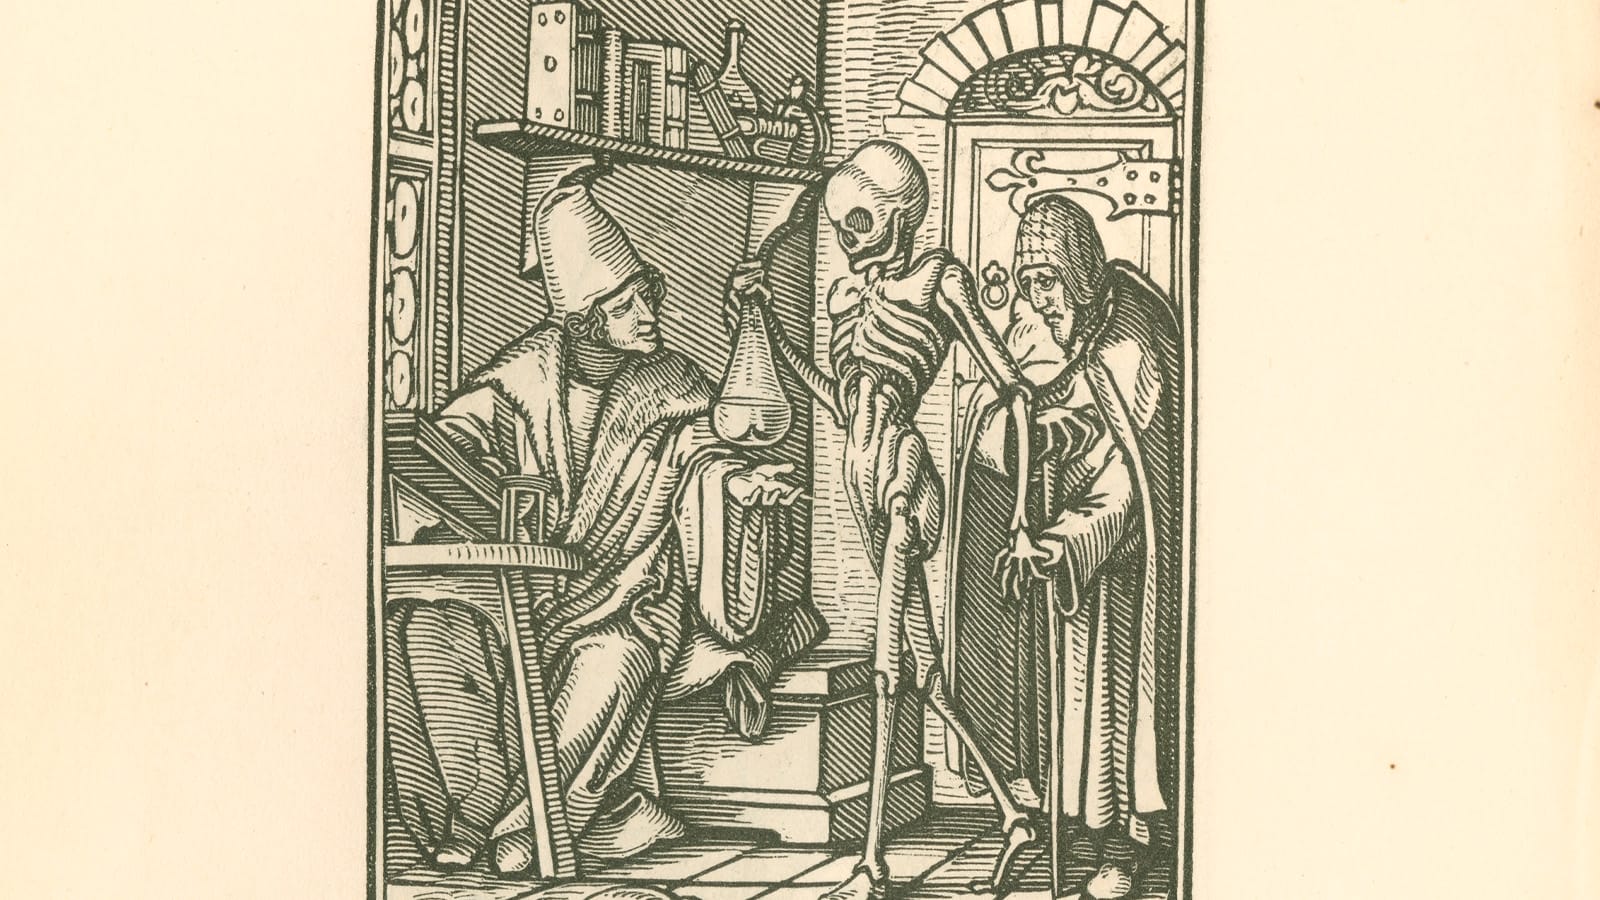 A manuscript image of a skeleton holding a bag